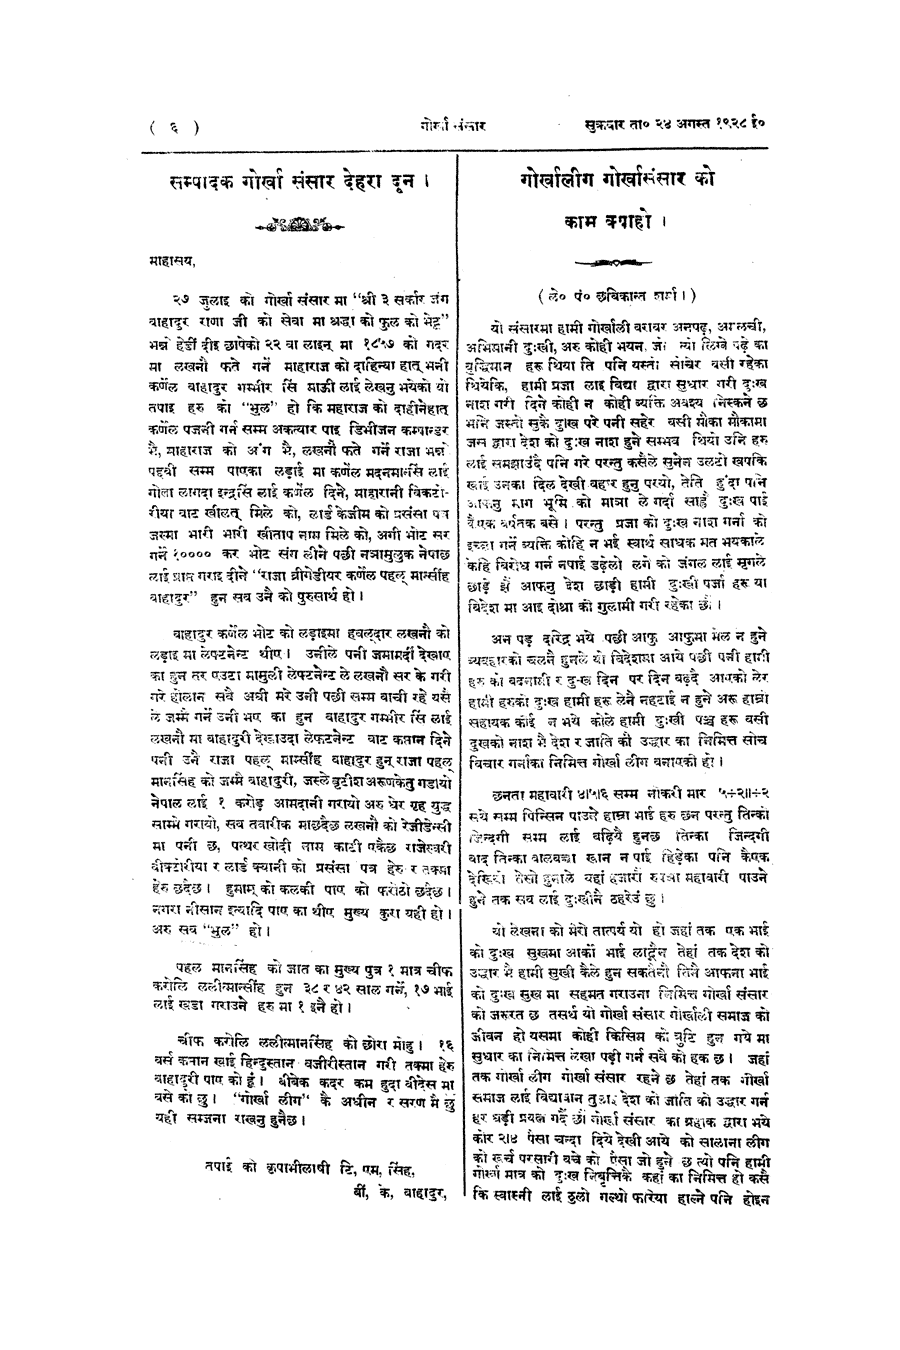 Gorkha Sansar, 24 Aug 1928, page 6